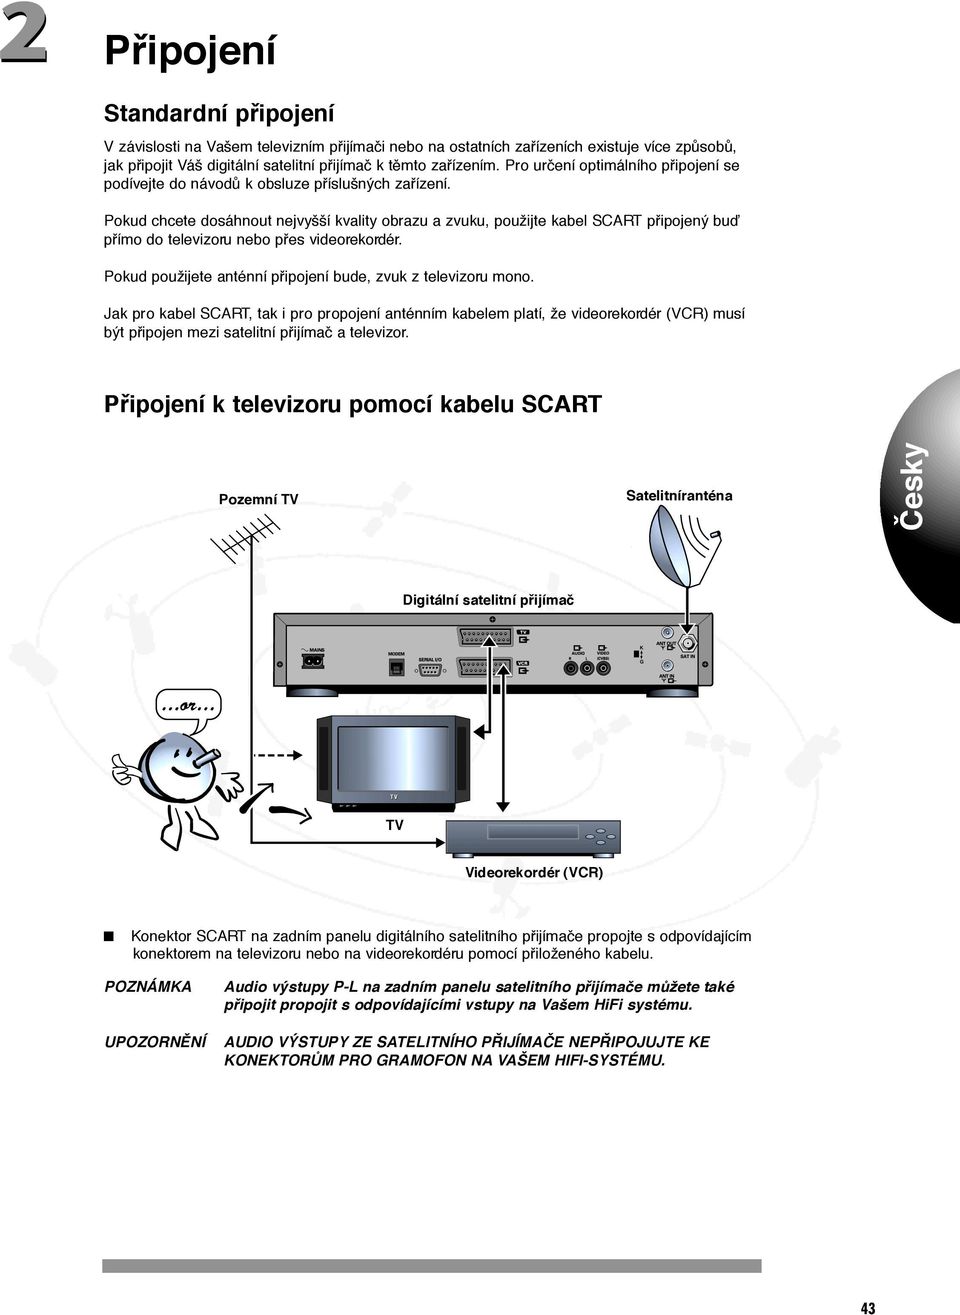 Pokud chcete dosáhnout nejvyšší kvality obrazu a zvuku, použijte kabel SCART pfiipojený buì pfiímo do televizoru nebo pfies videorekordér.